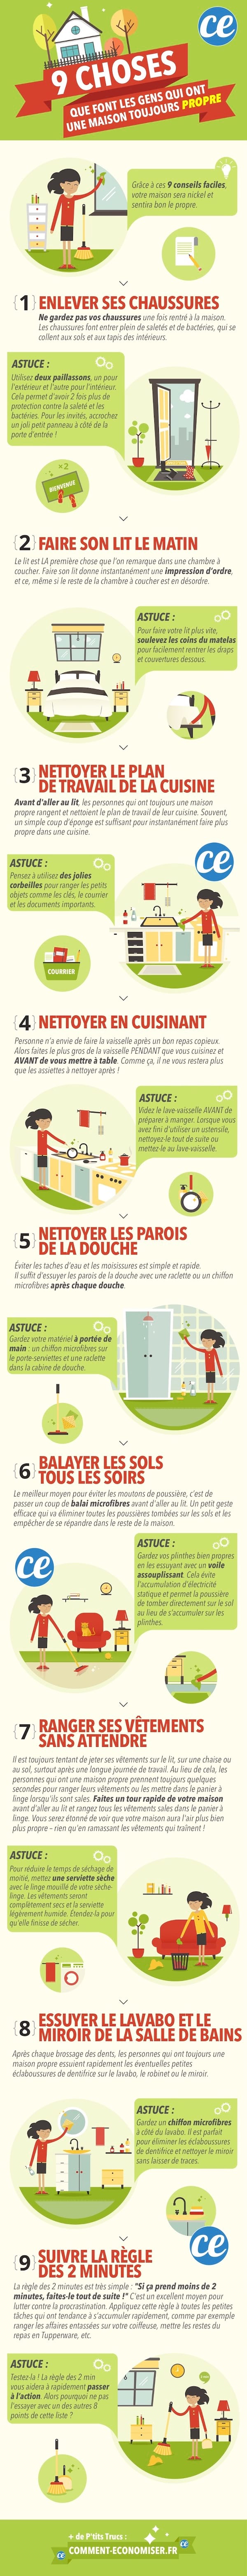 9 tips til at holde dit hus ryddeligt